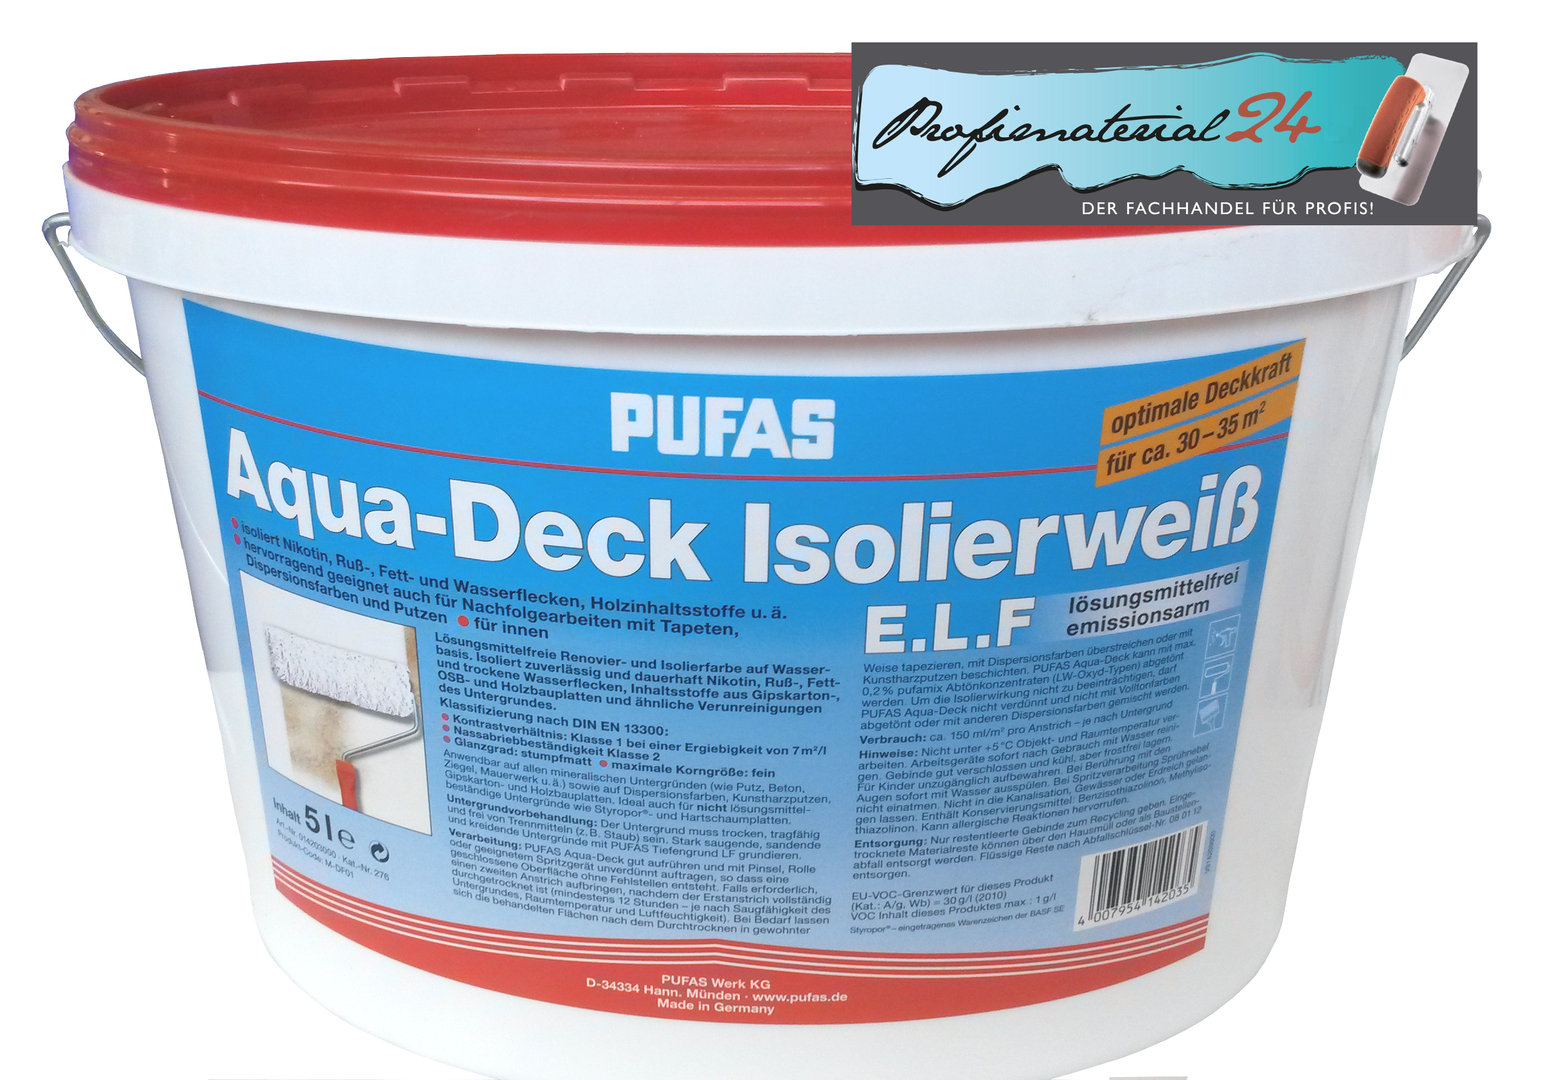 Der Fachhandel für Profis - PUFAS Aqua Deck Isolierweiss E.L.F